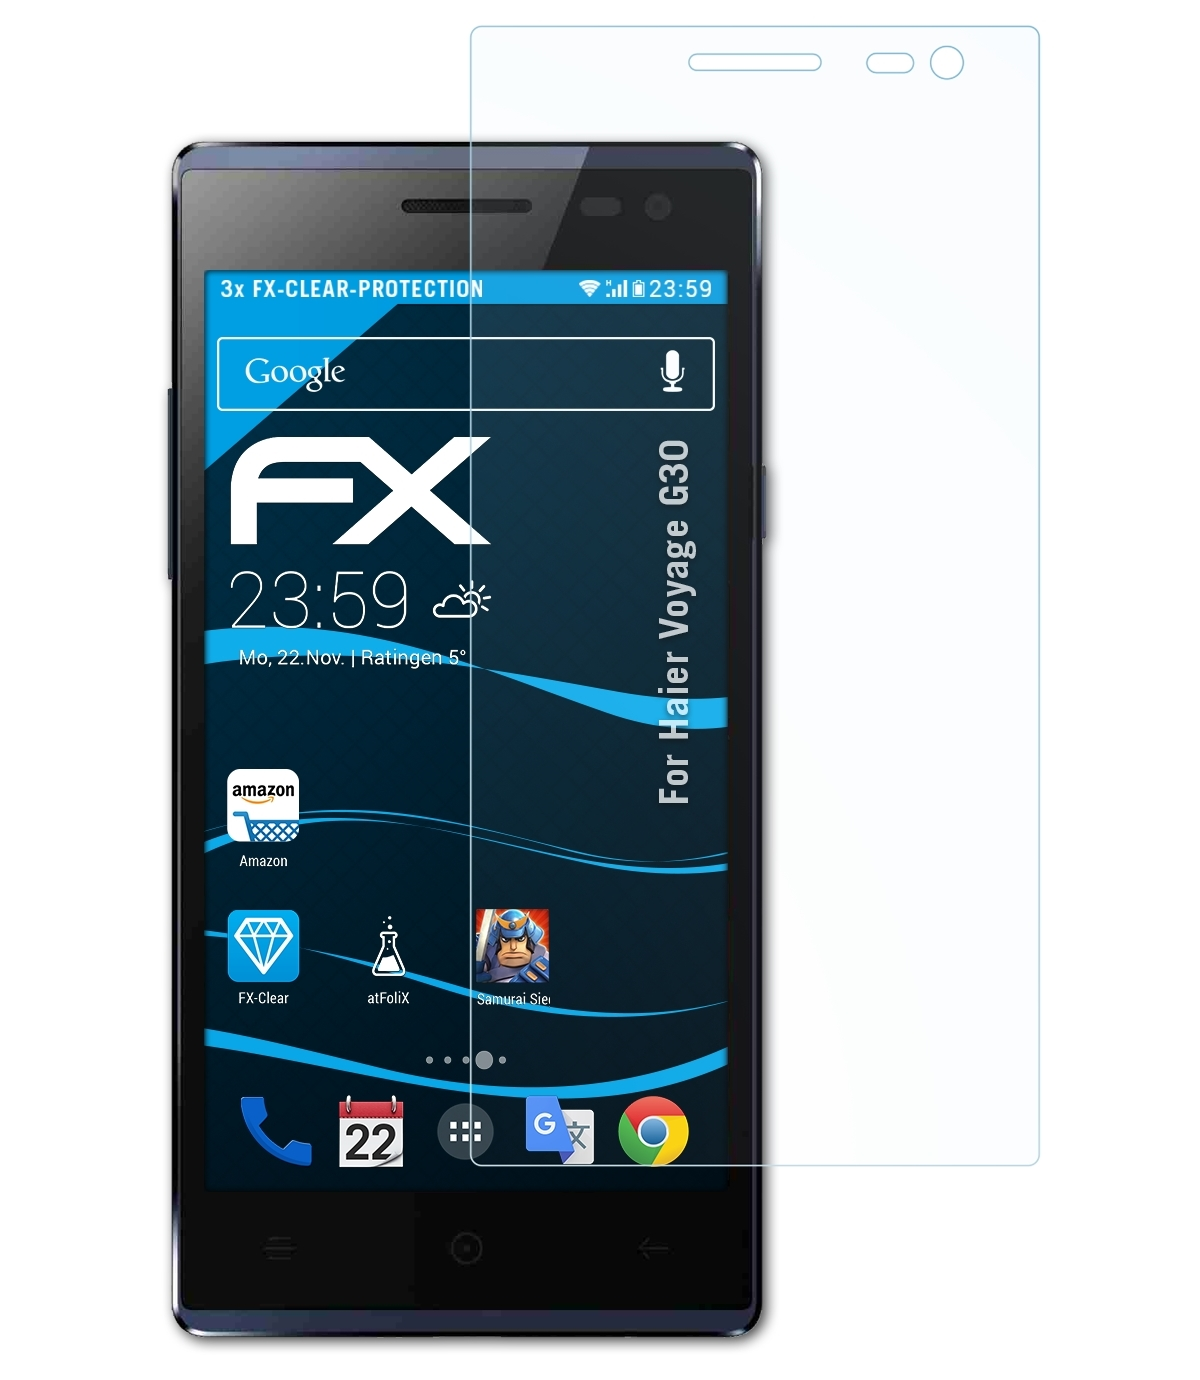 ATFOLIX 3x FX-Clear Displayschutz(für Haier Voyage G30)